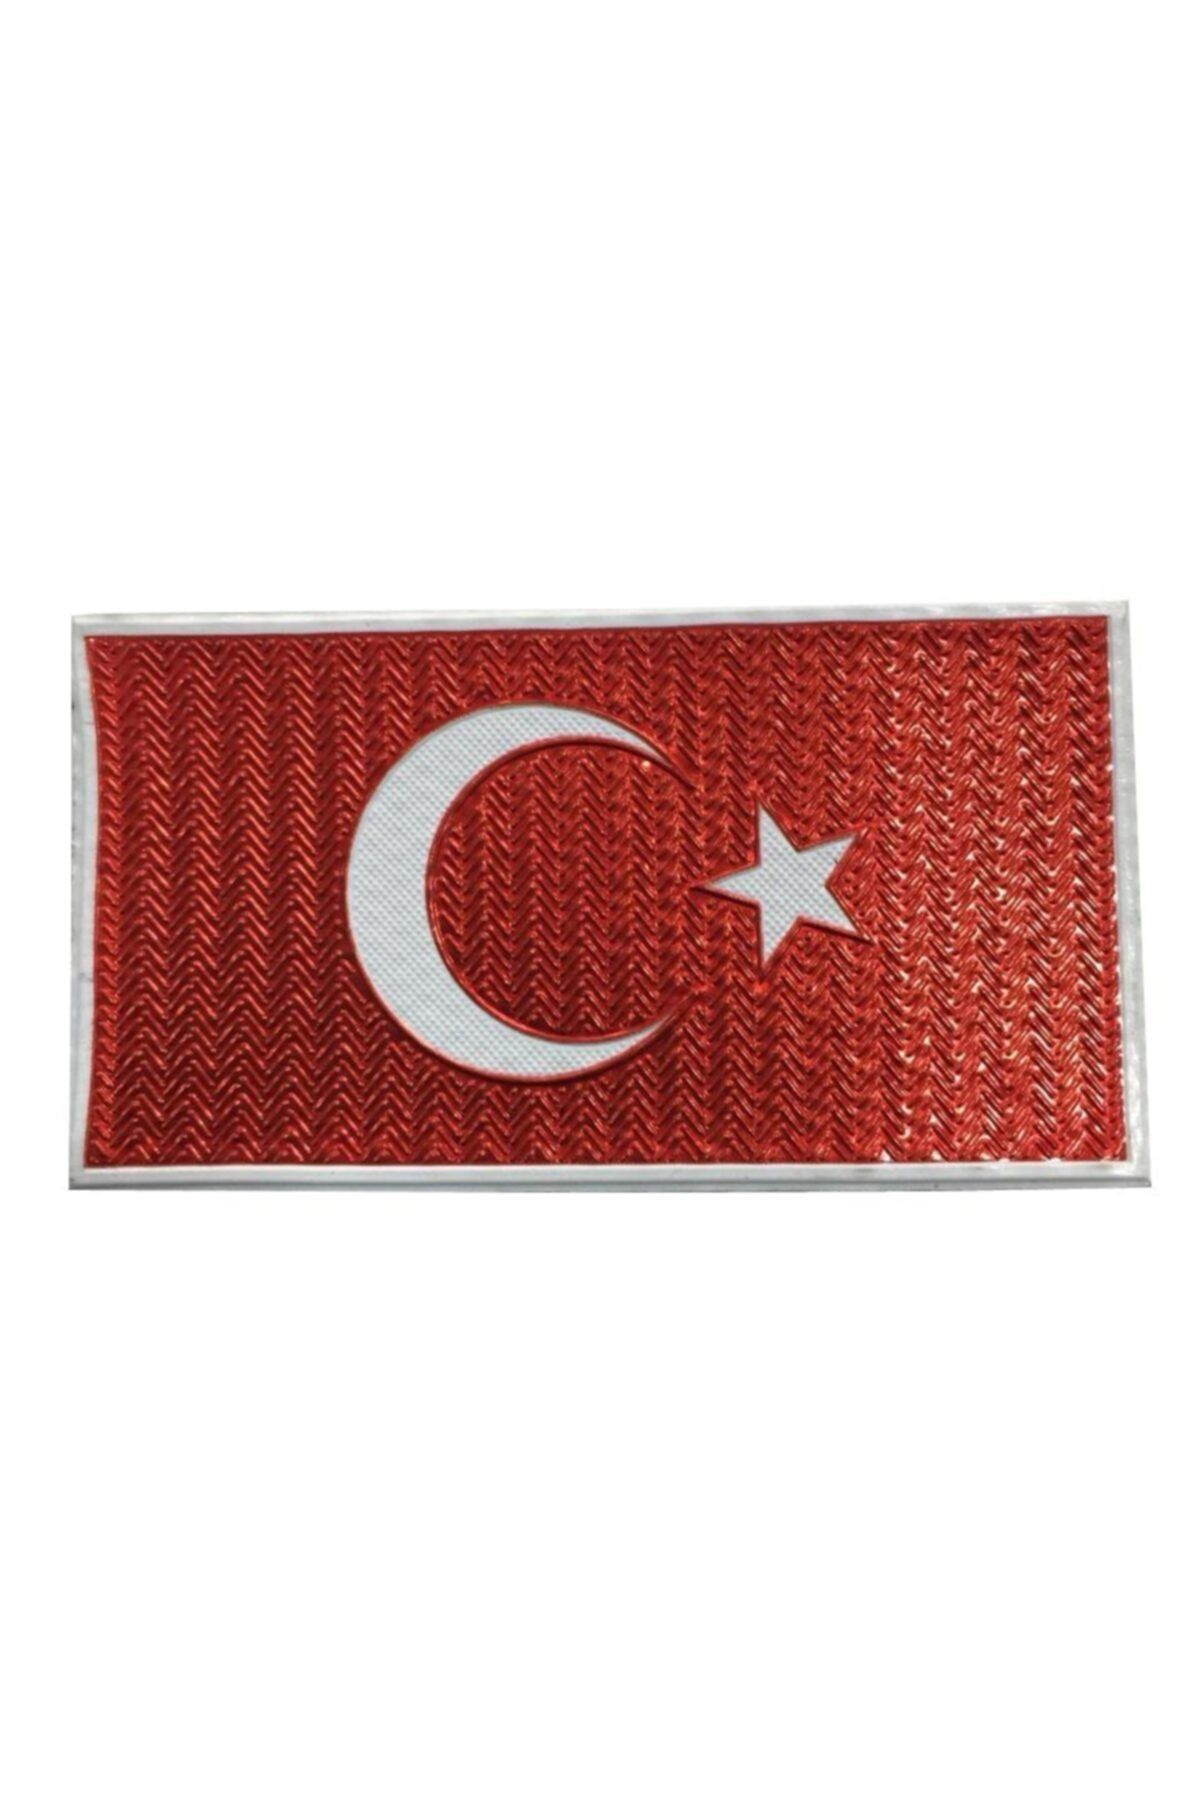 Silyon Askeri Giyim J. Asayiş Kol Türk Bayrağı